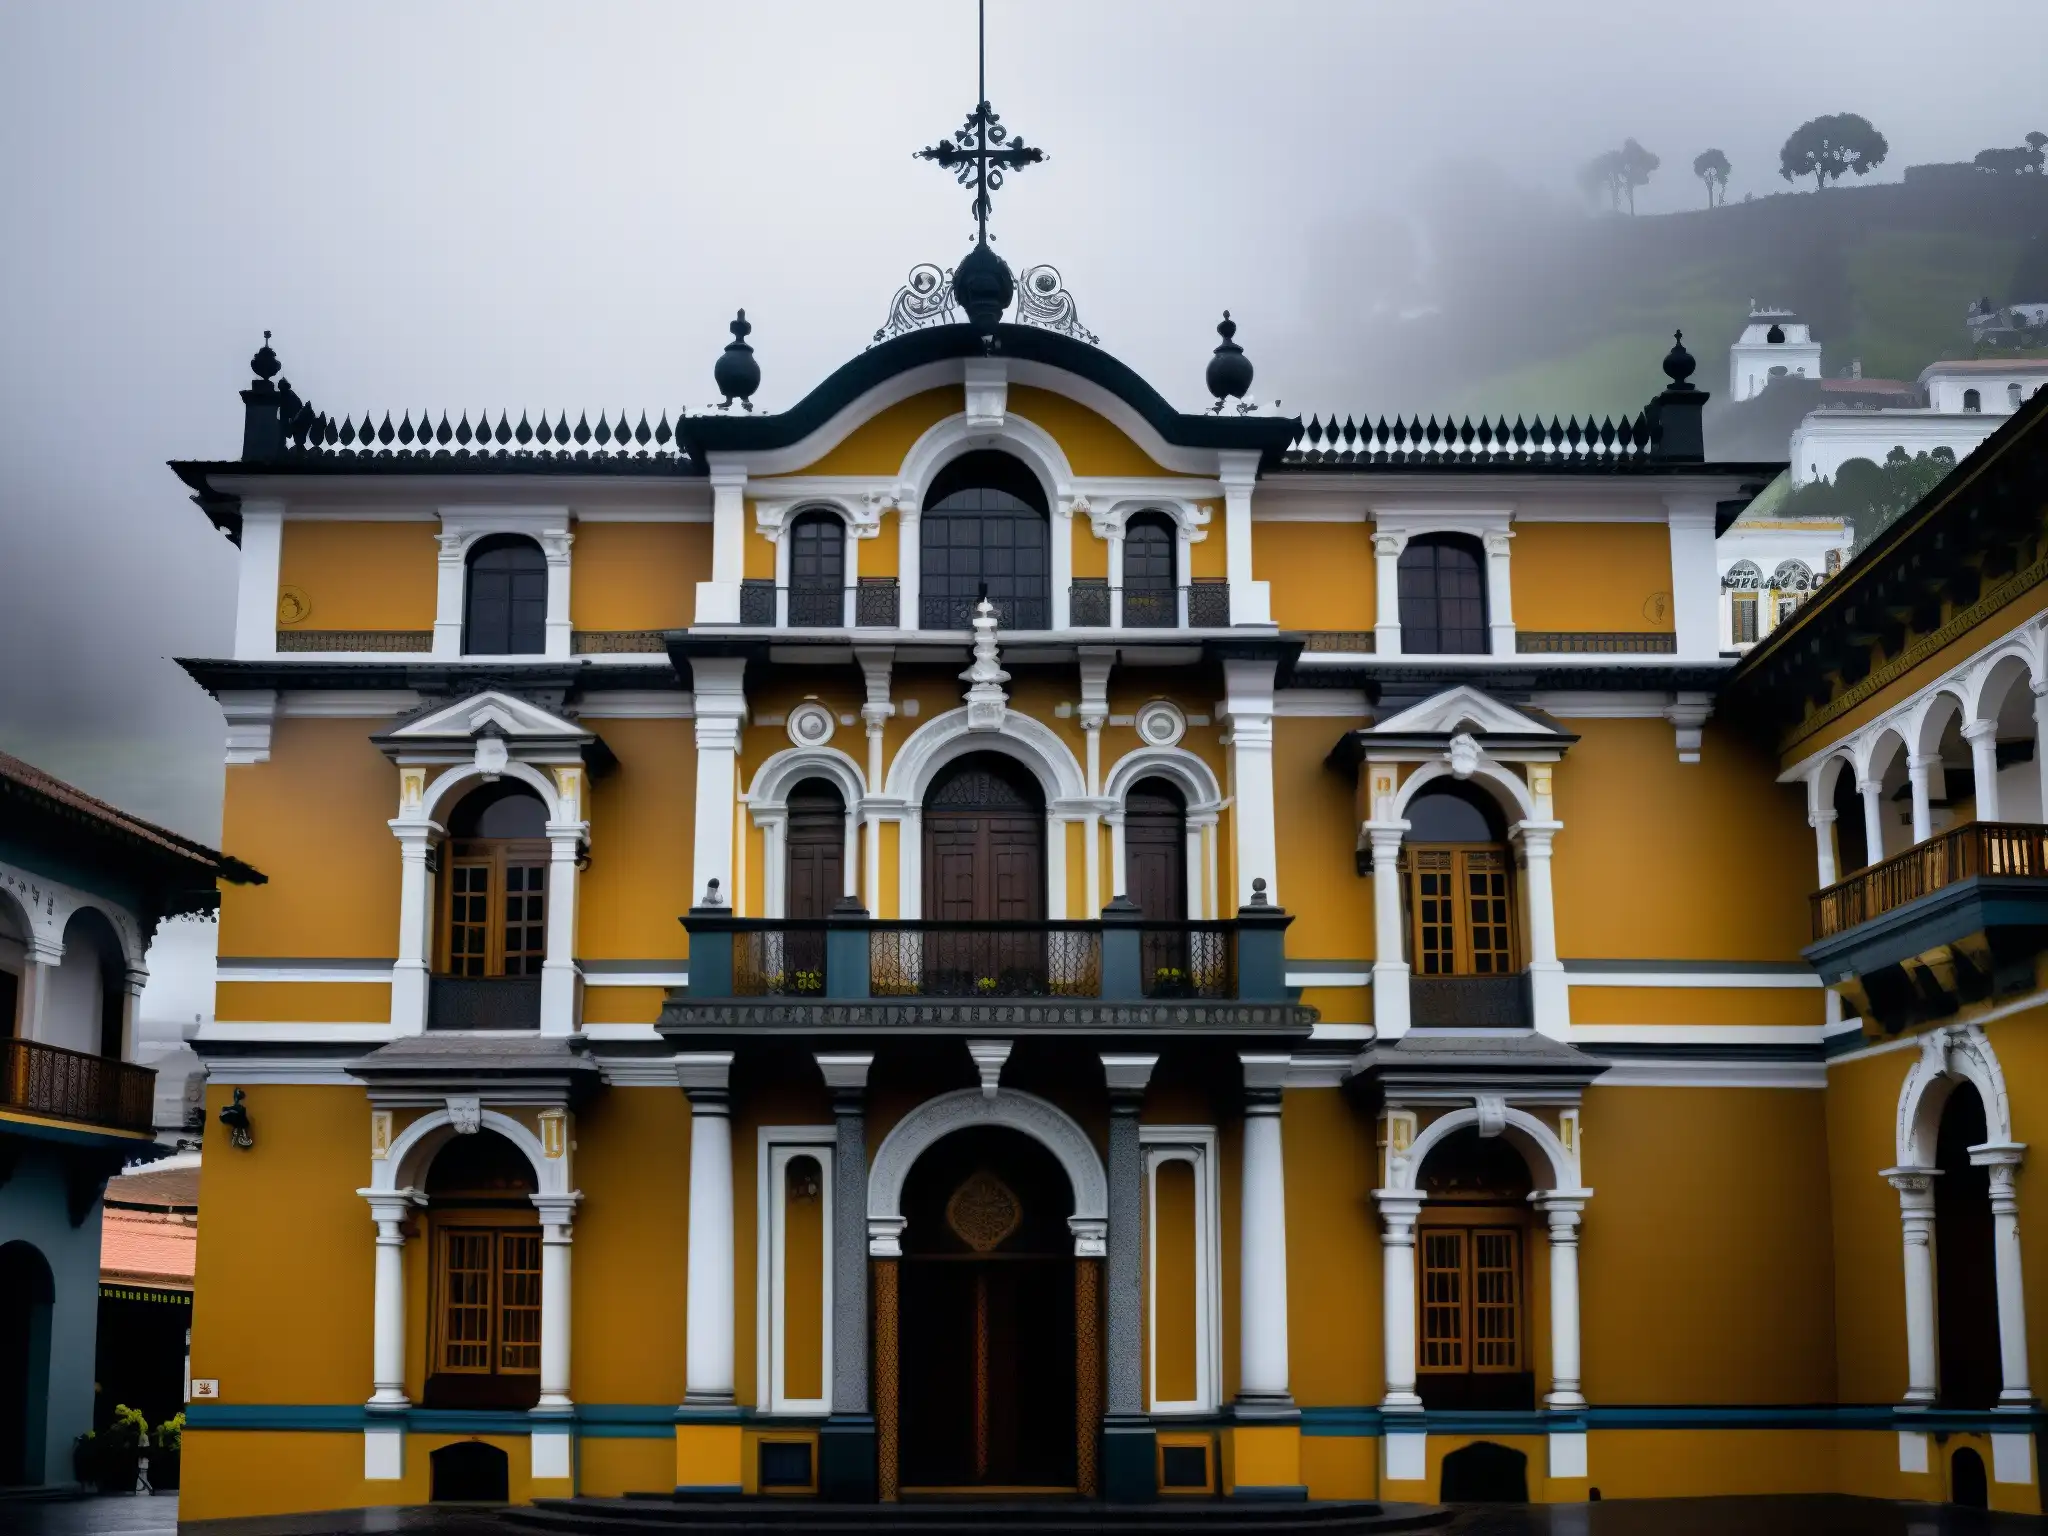 Imagen fantasmal de La Casa de los Espejos en Quito, envuelta en misteriosa neblina